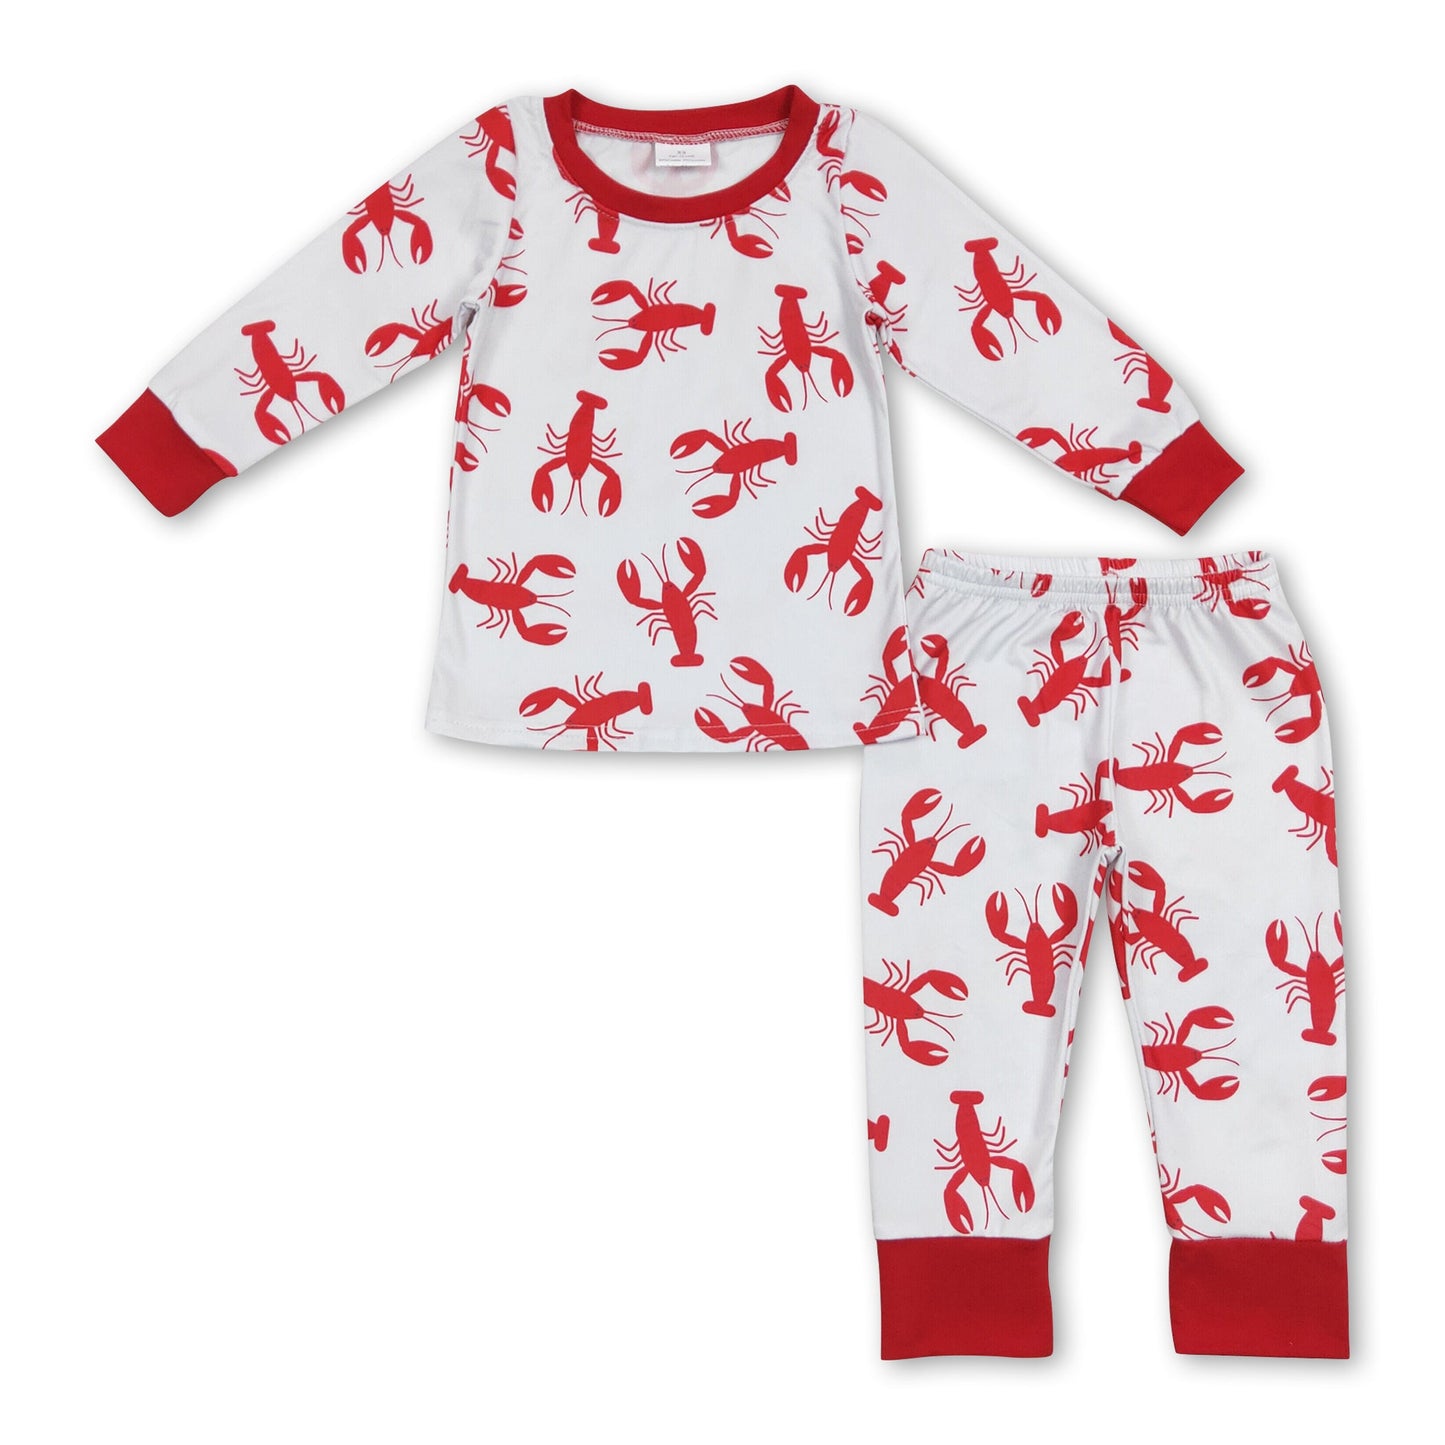 Red long sleeves crawfish baby kids pajamas